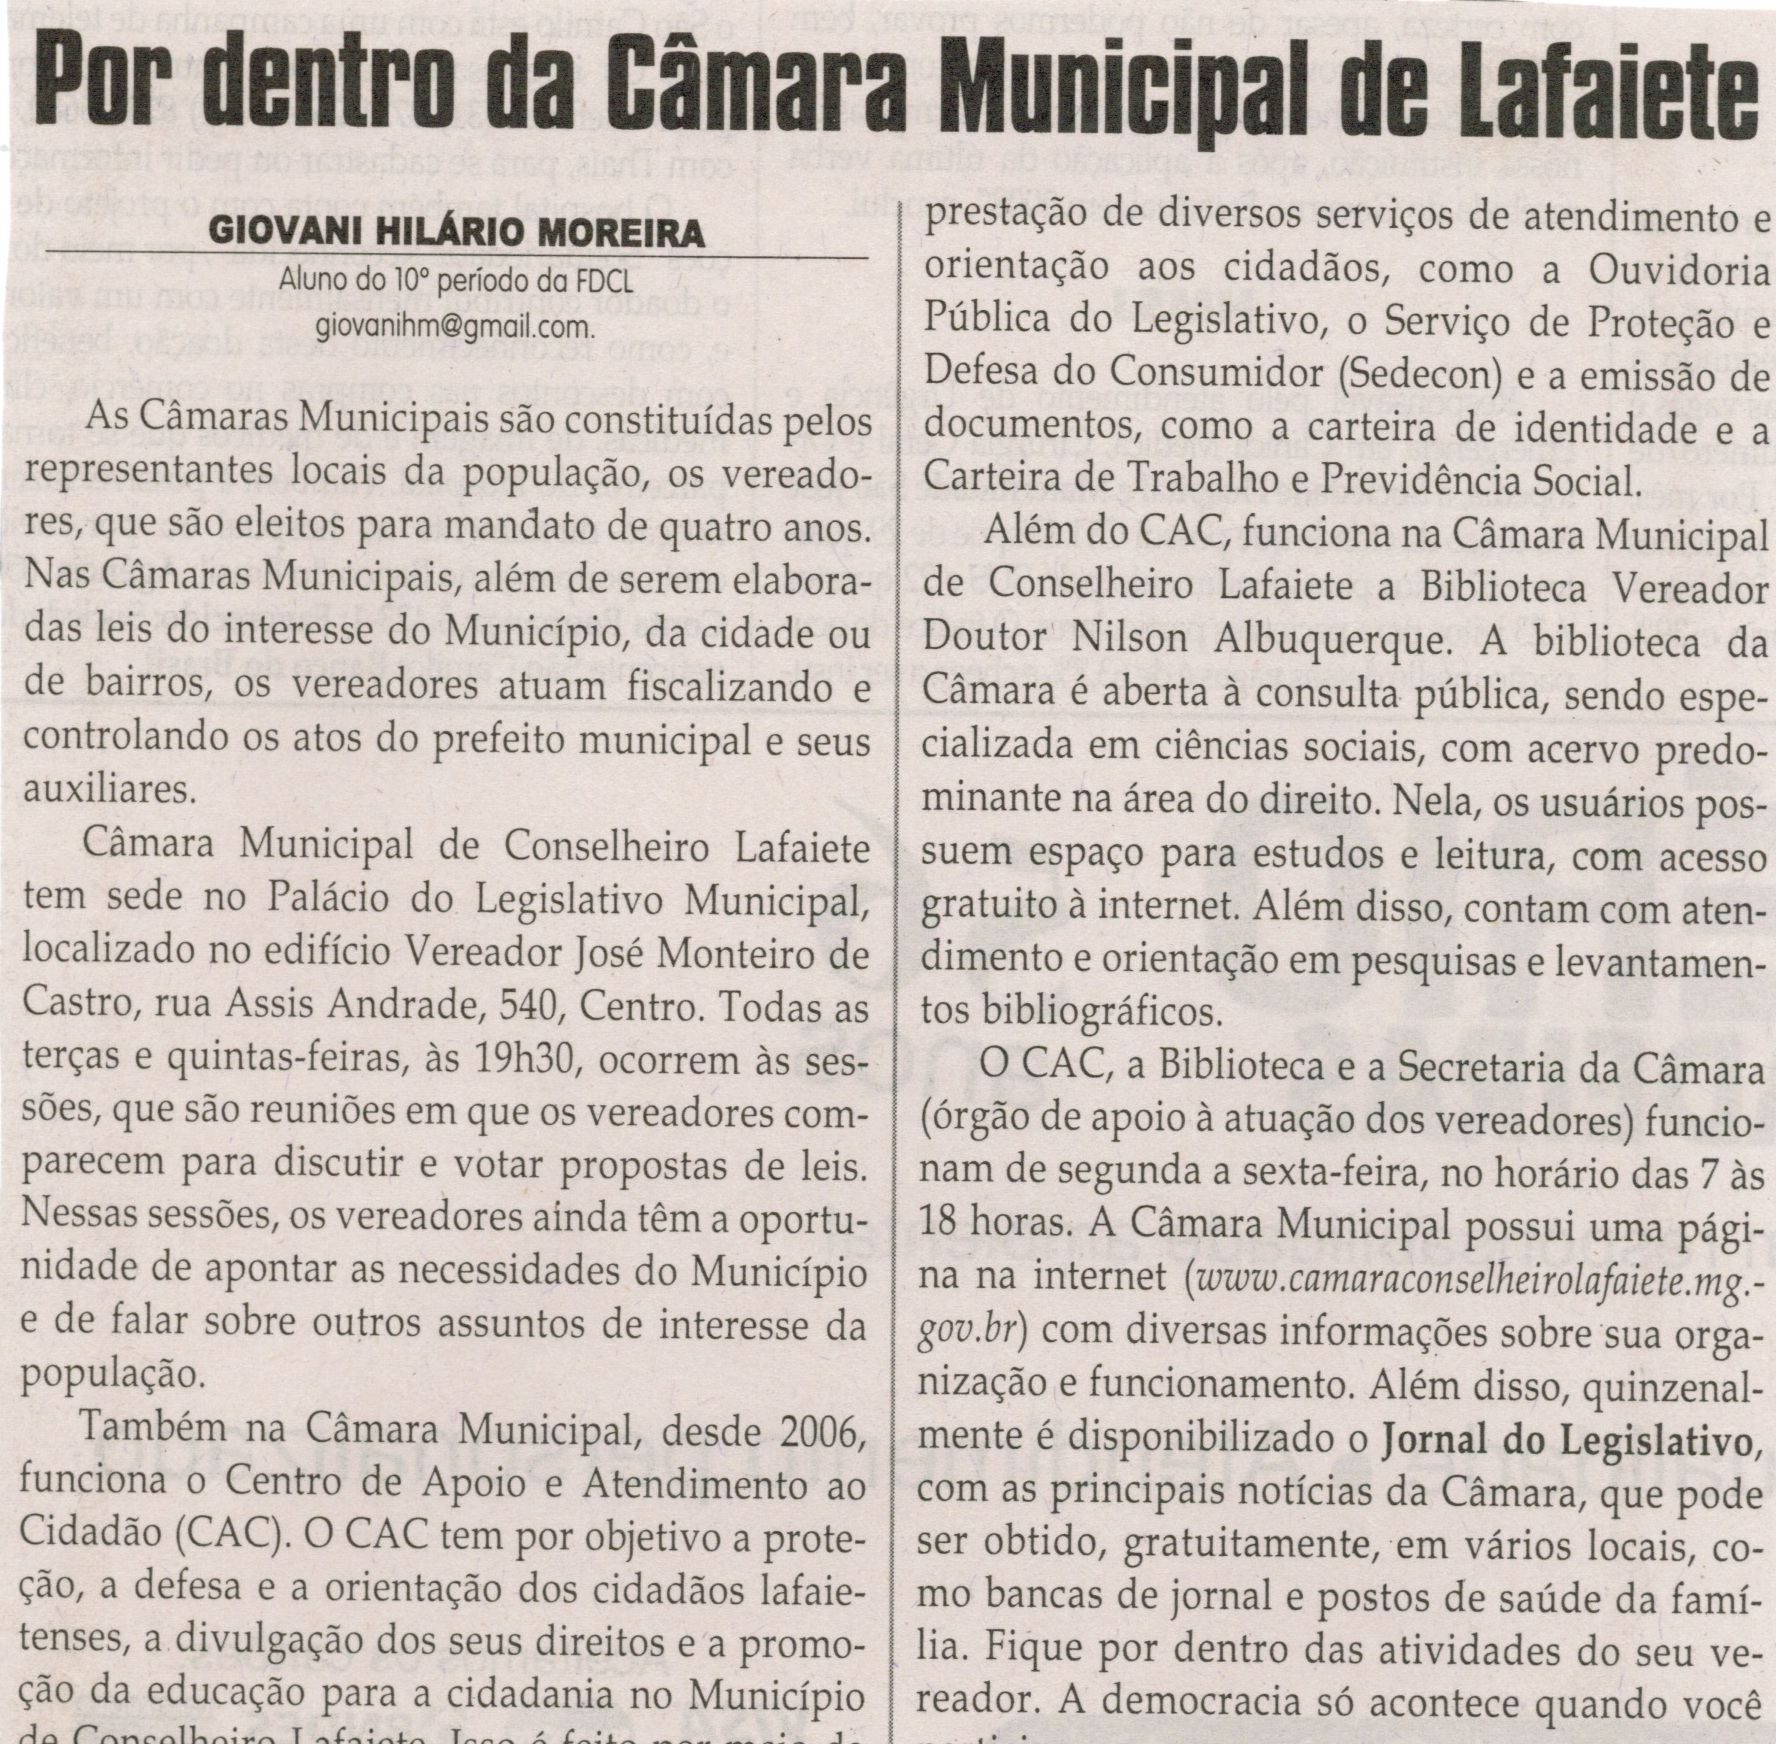 MOREIRA, Giovani Hilário. Por dentro da Câmara. Jornal Correio da Cidade,  Conselheiro Lafaiete, 20 abr. 2013 a 26 abr. 2013, p. 09.